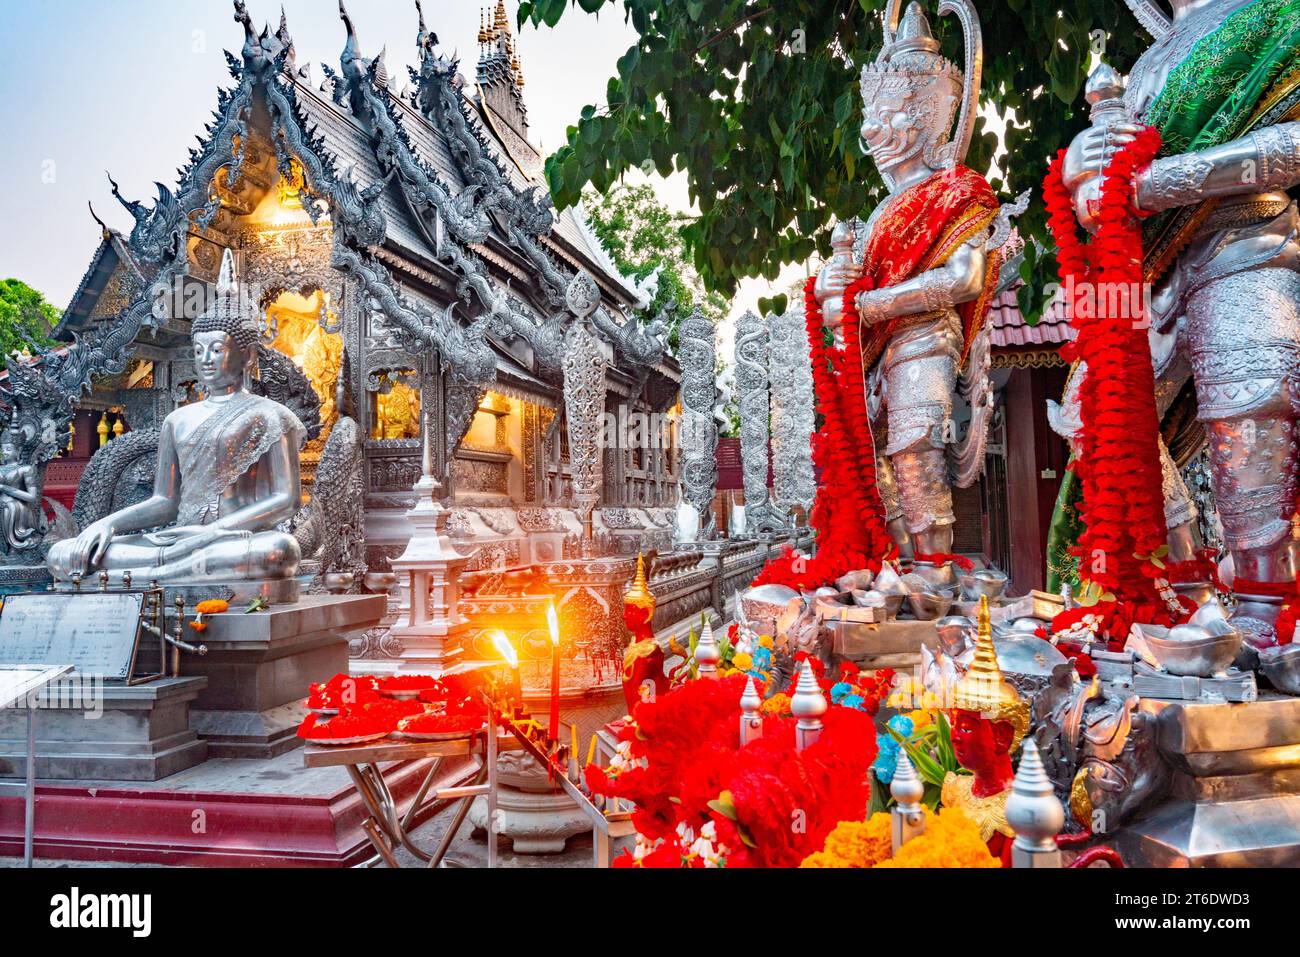 Tavoli con fiori rossi e arancioni, ghirlande sacre, candele accese, statue e incenso, prima di uno dei templi più belli di Chiang mai. Struttura unica Foto Stock